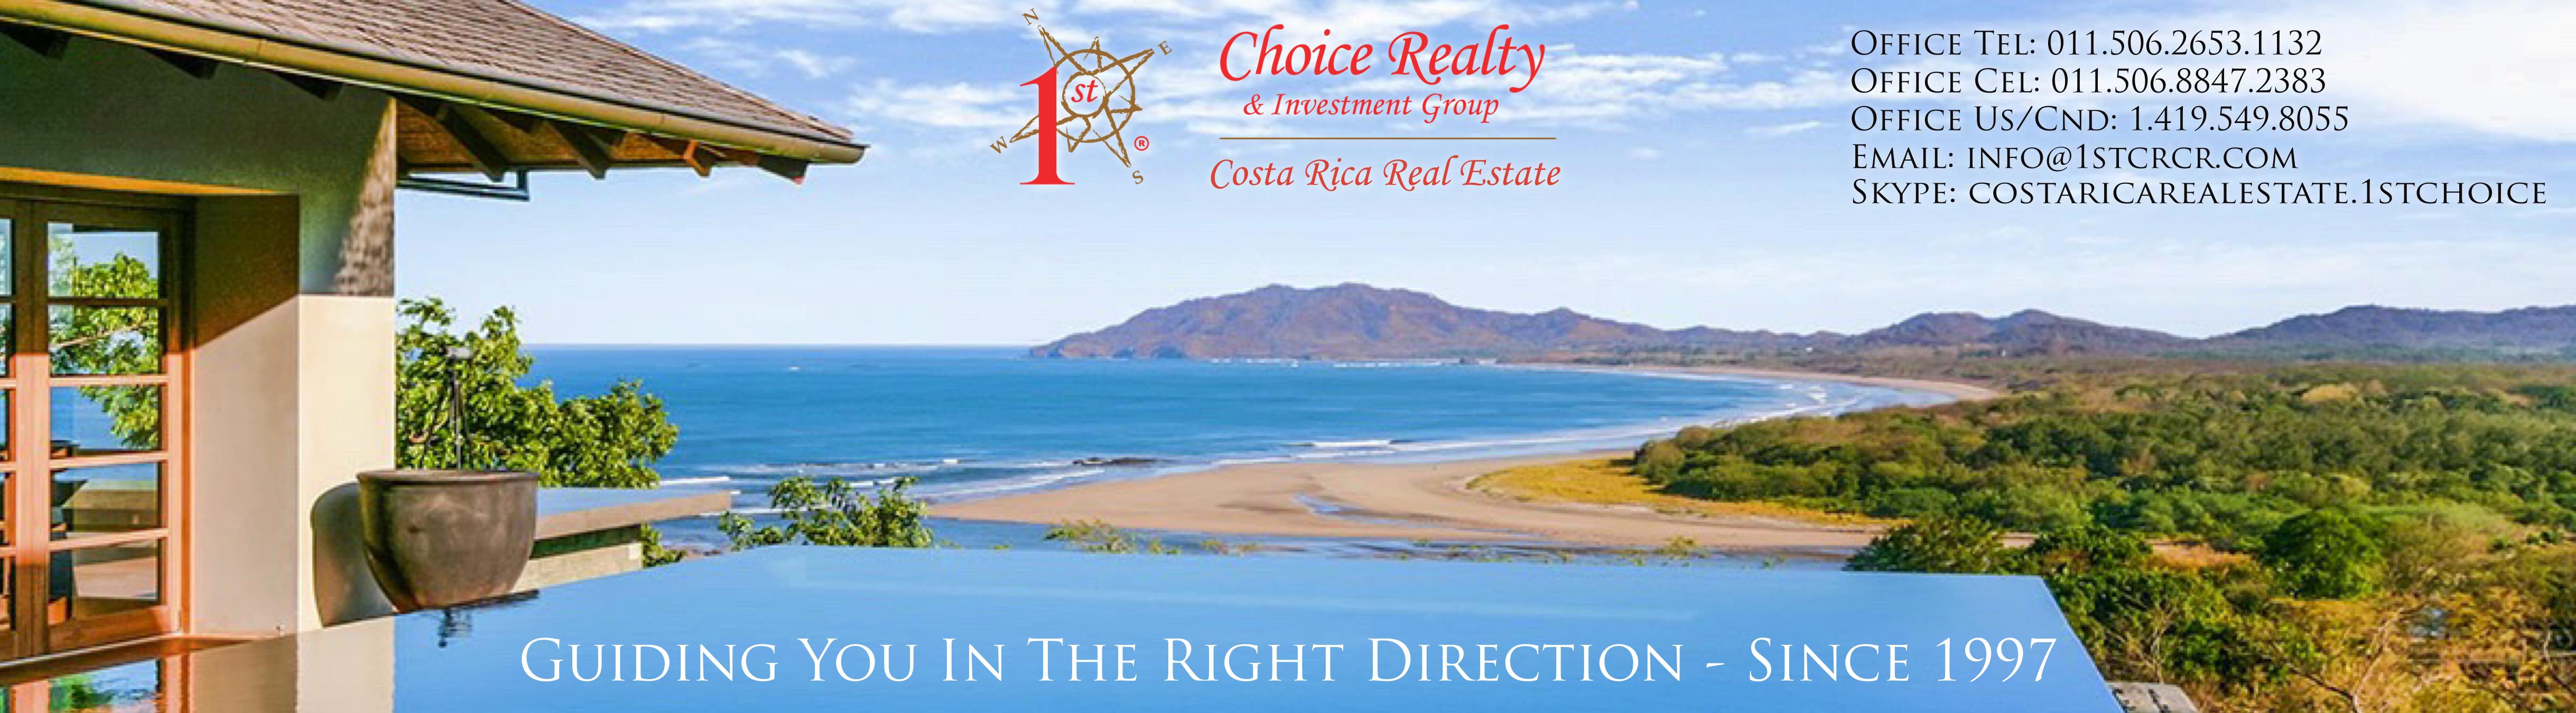 1st Choice Real Estate In Costa Rica Costa Rica Real Estate Tamarindo Real Estate